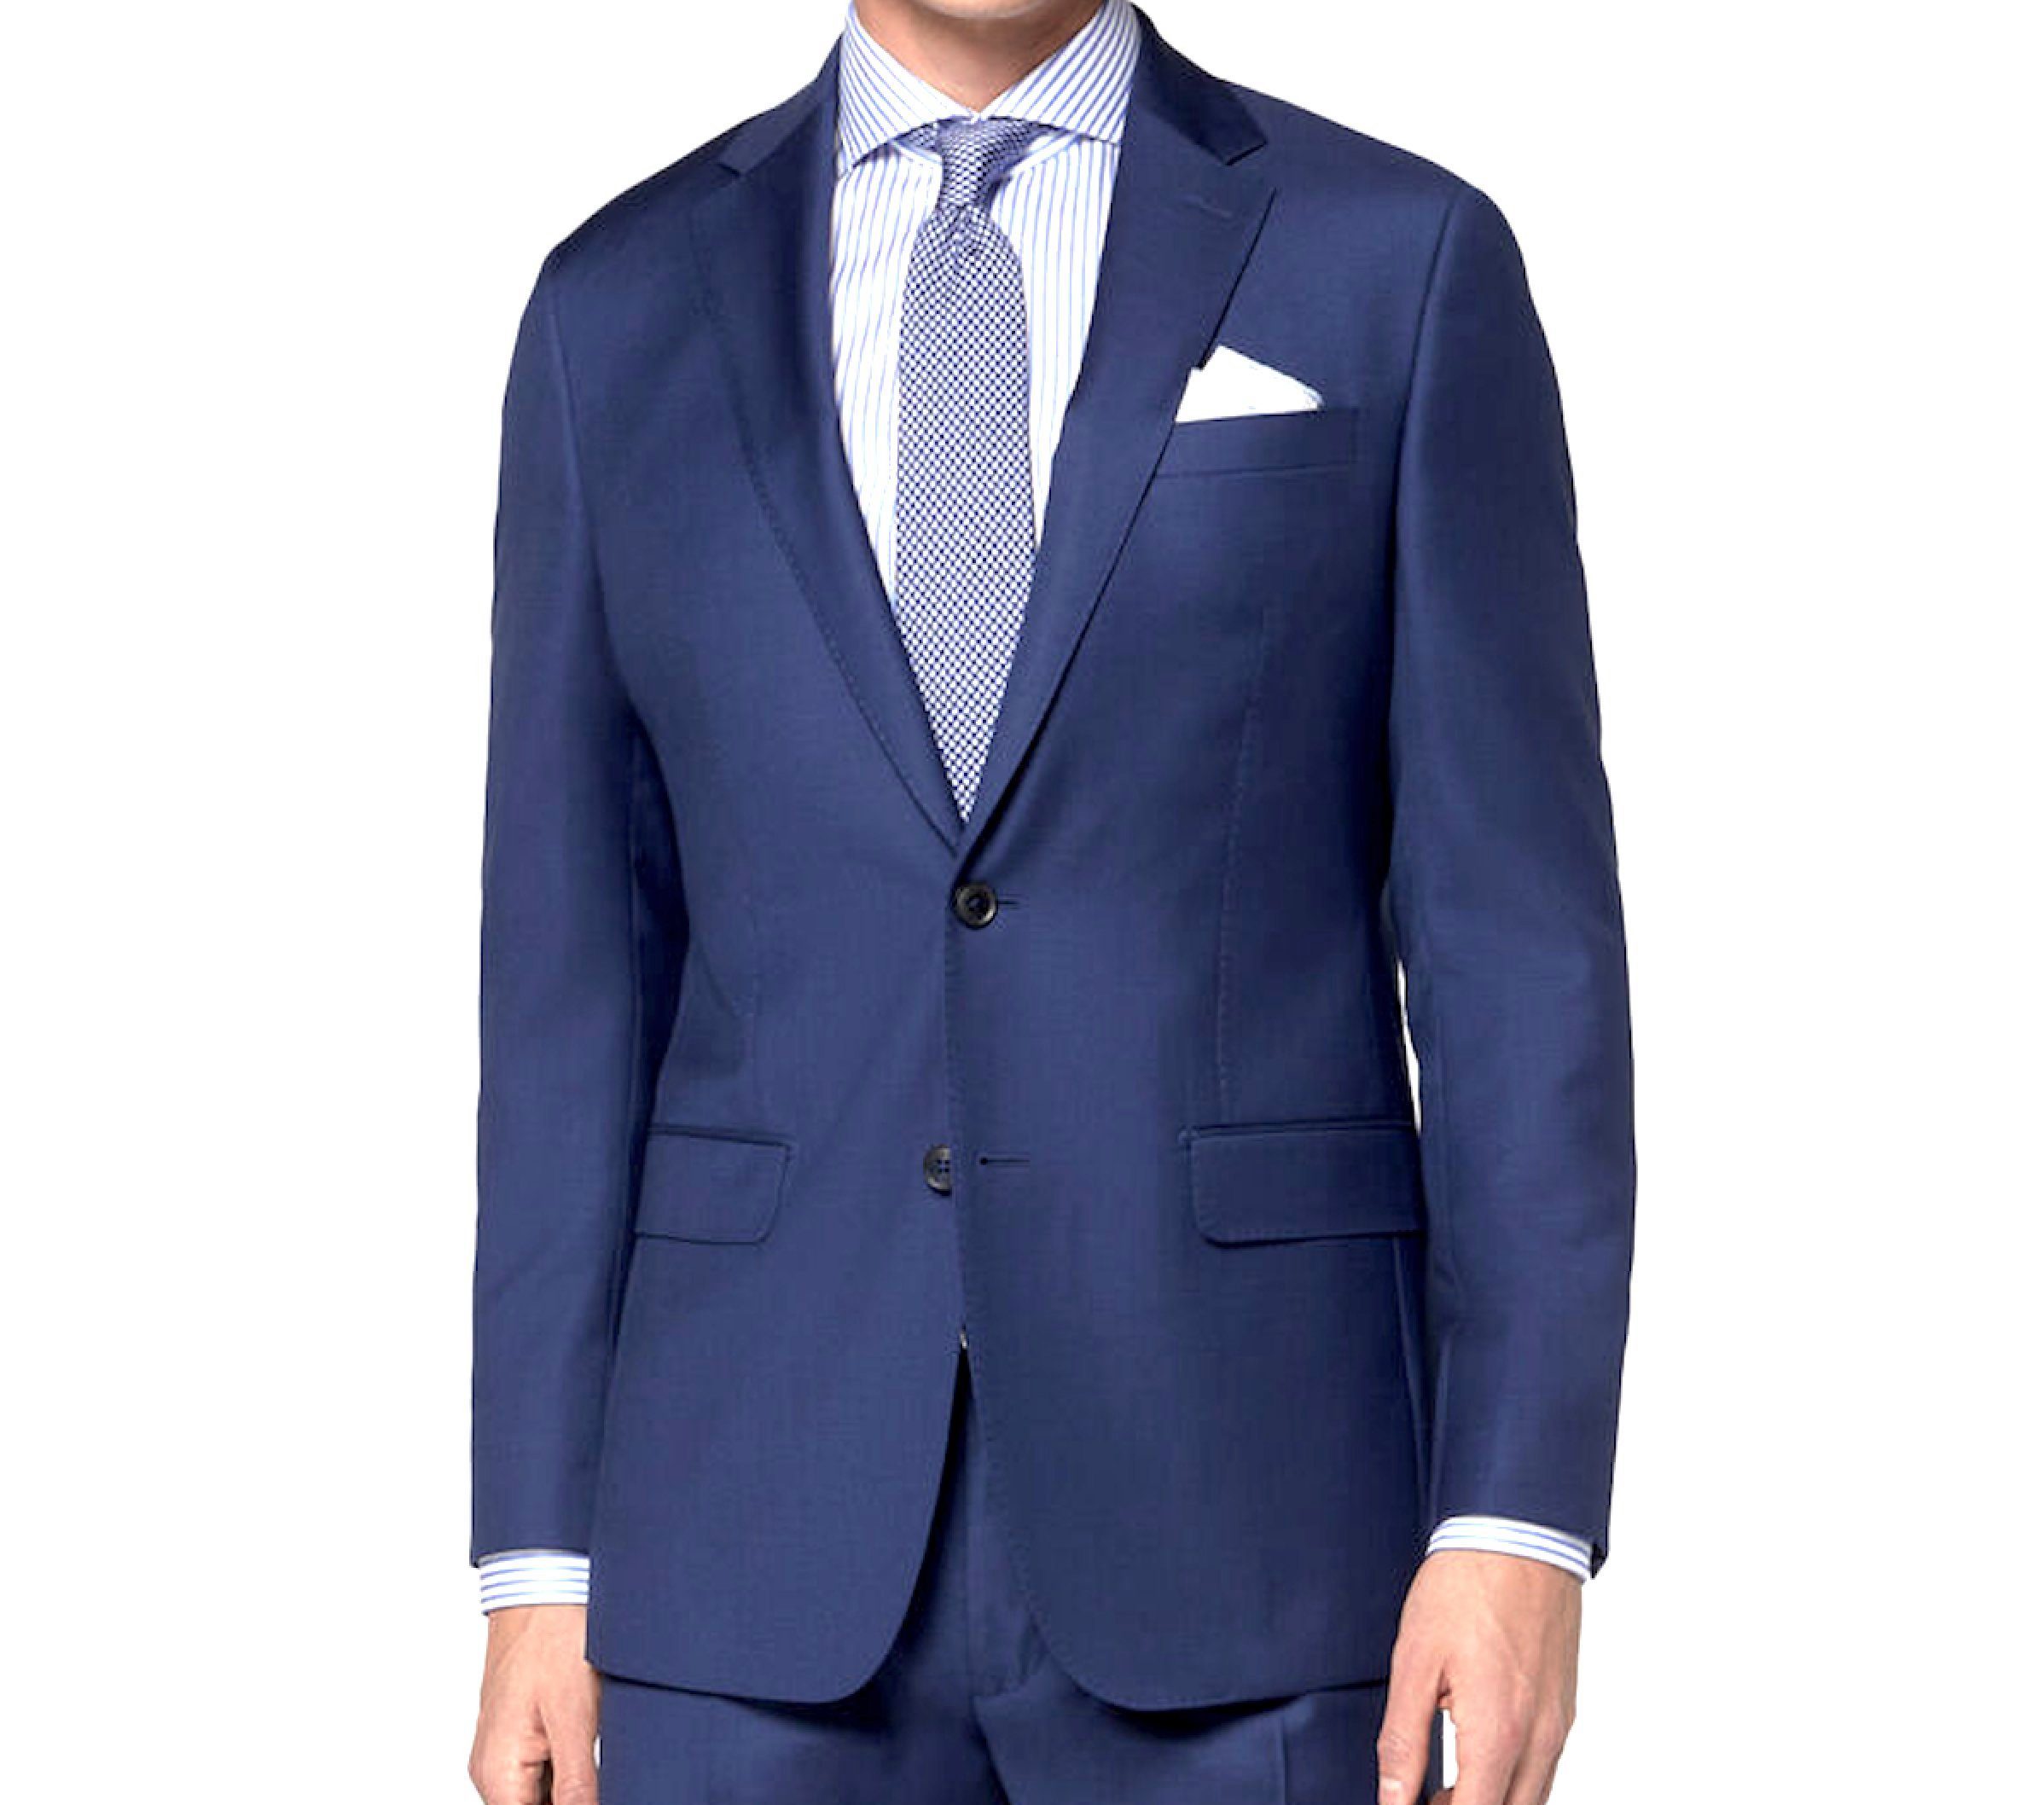 Keskin Collection Herren Größen Anzug Gerades alle Royalblau Blau Kleiderbügel (Anzug Bein, Sommeranzug Set) mit bequemes Sakko, Anzug Keskin